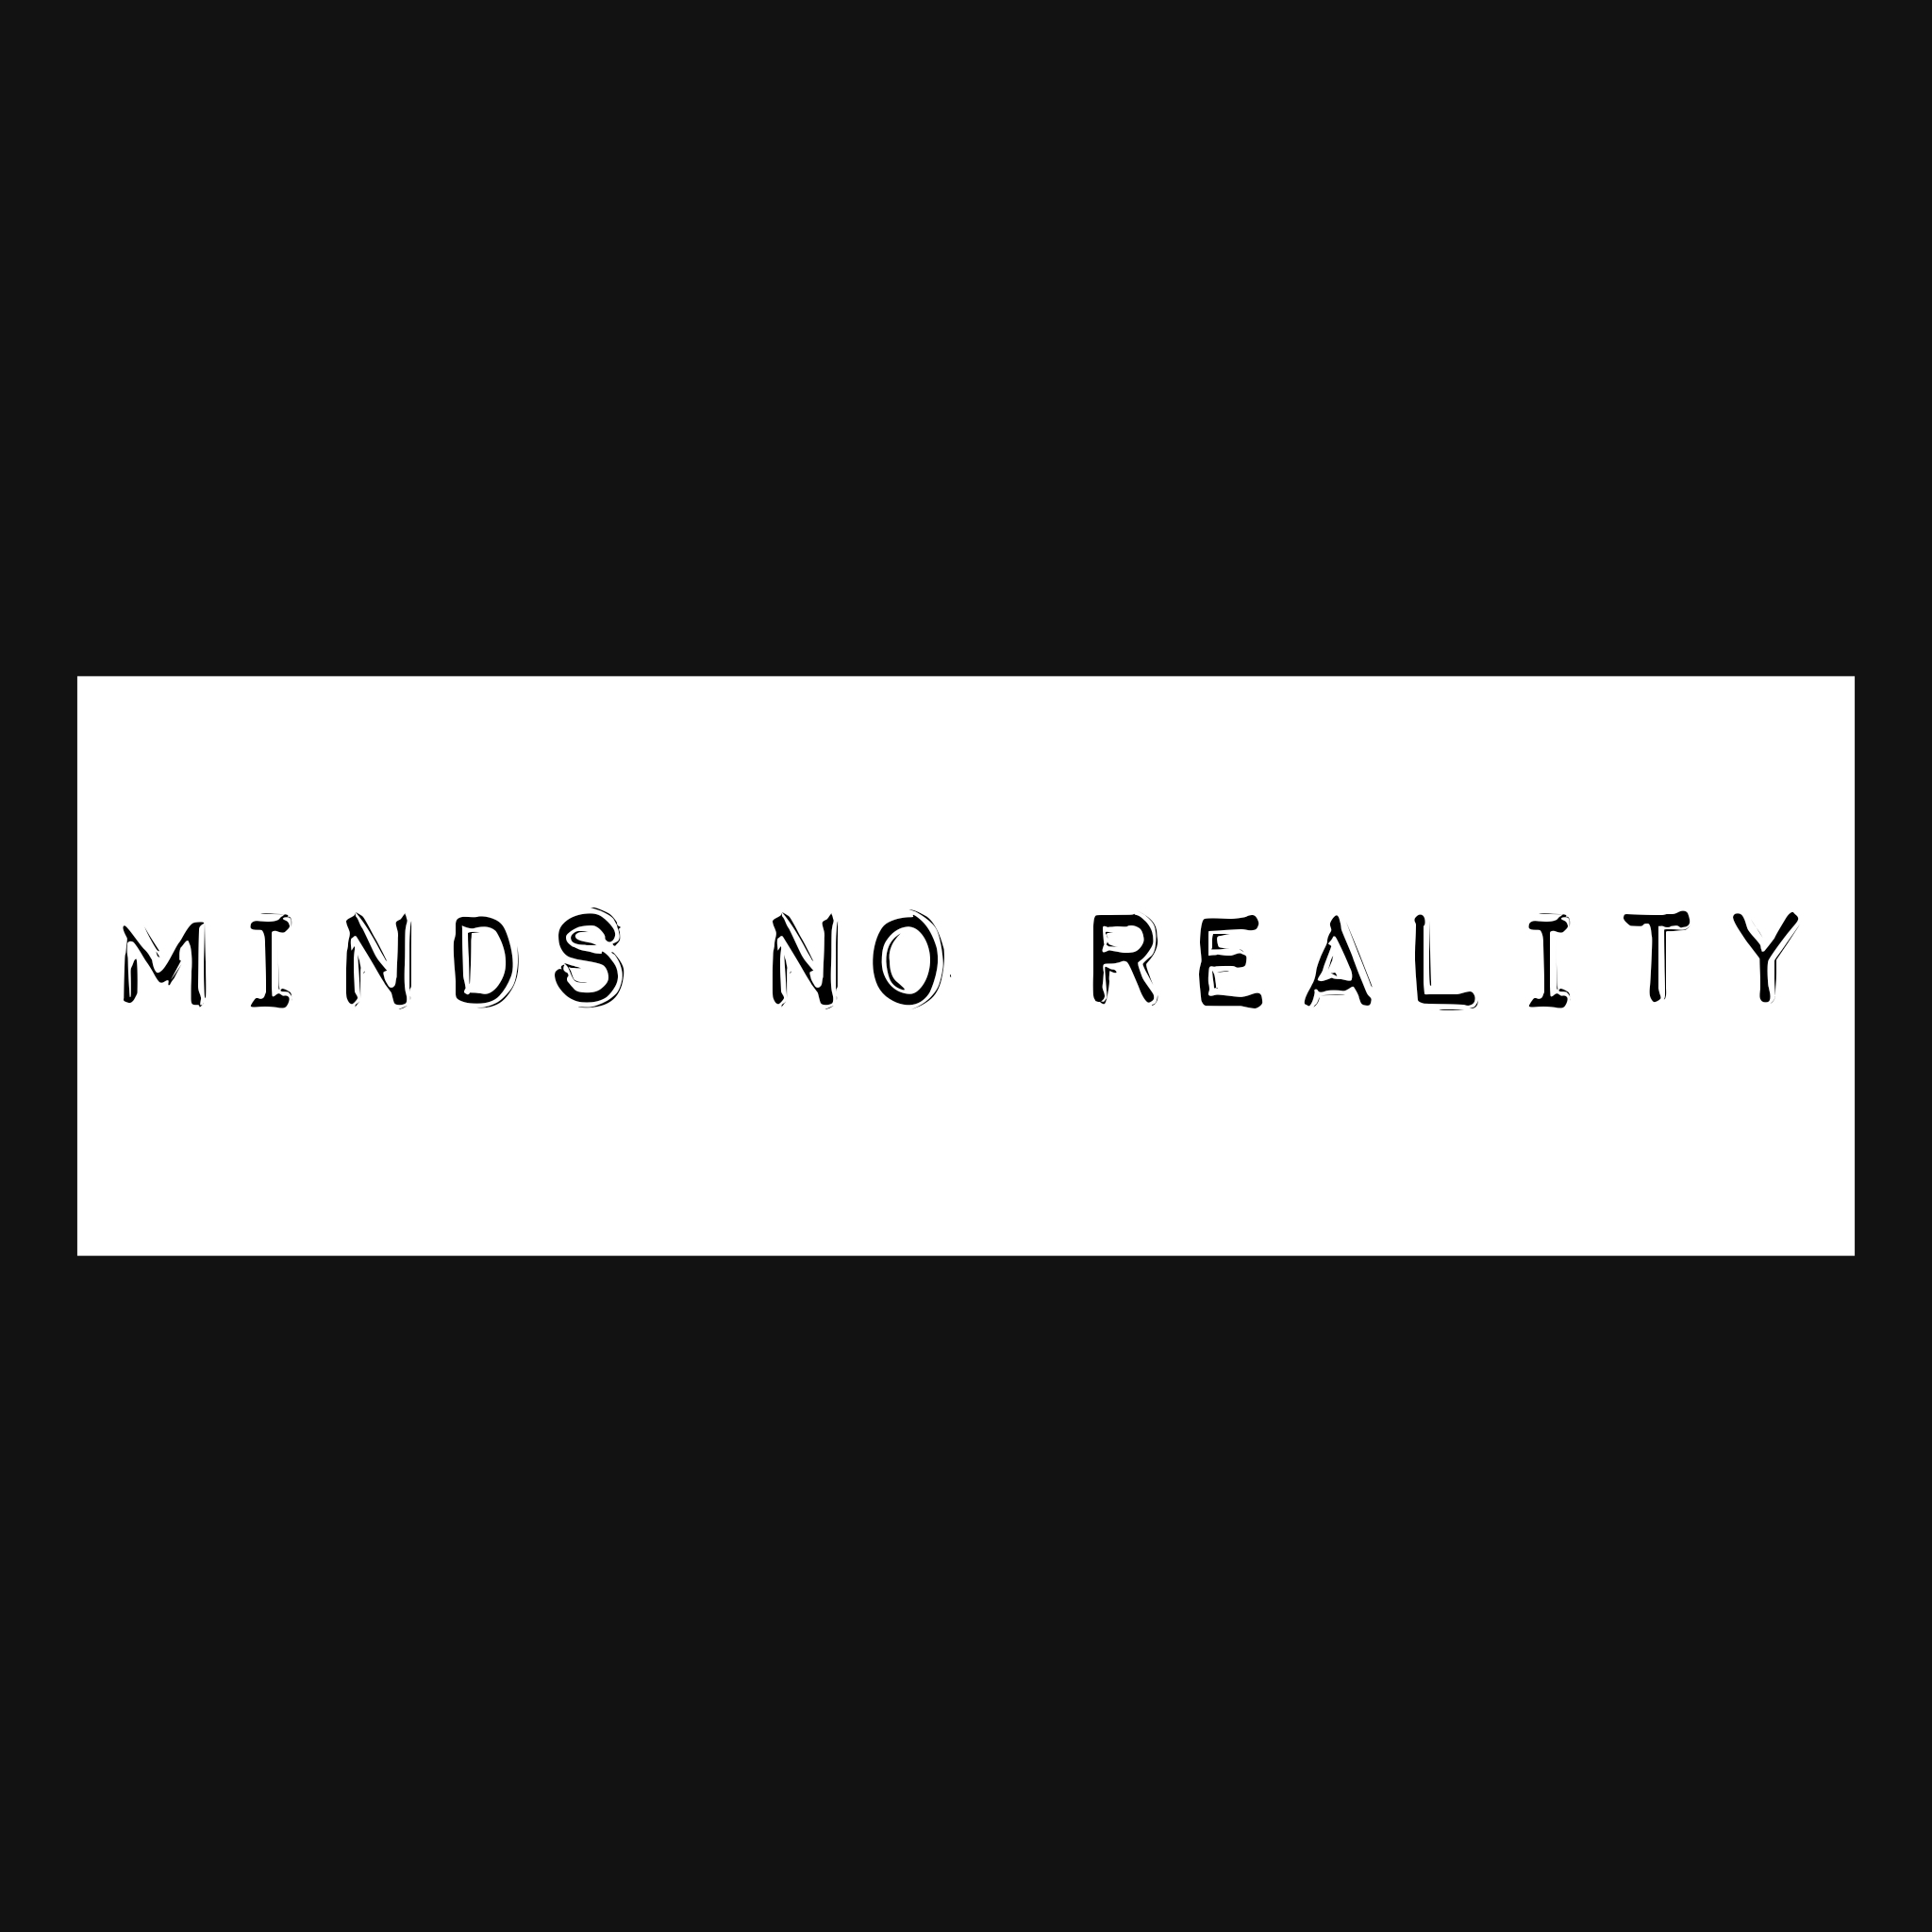 MINDS NO REALITY